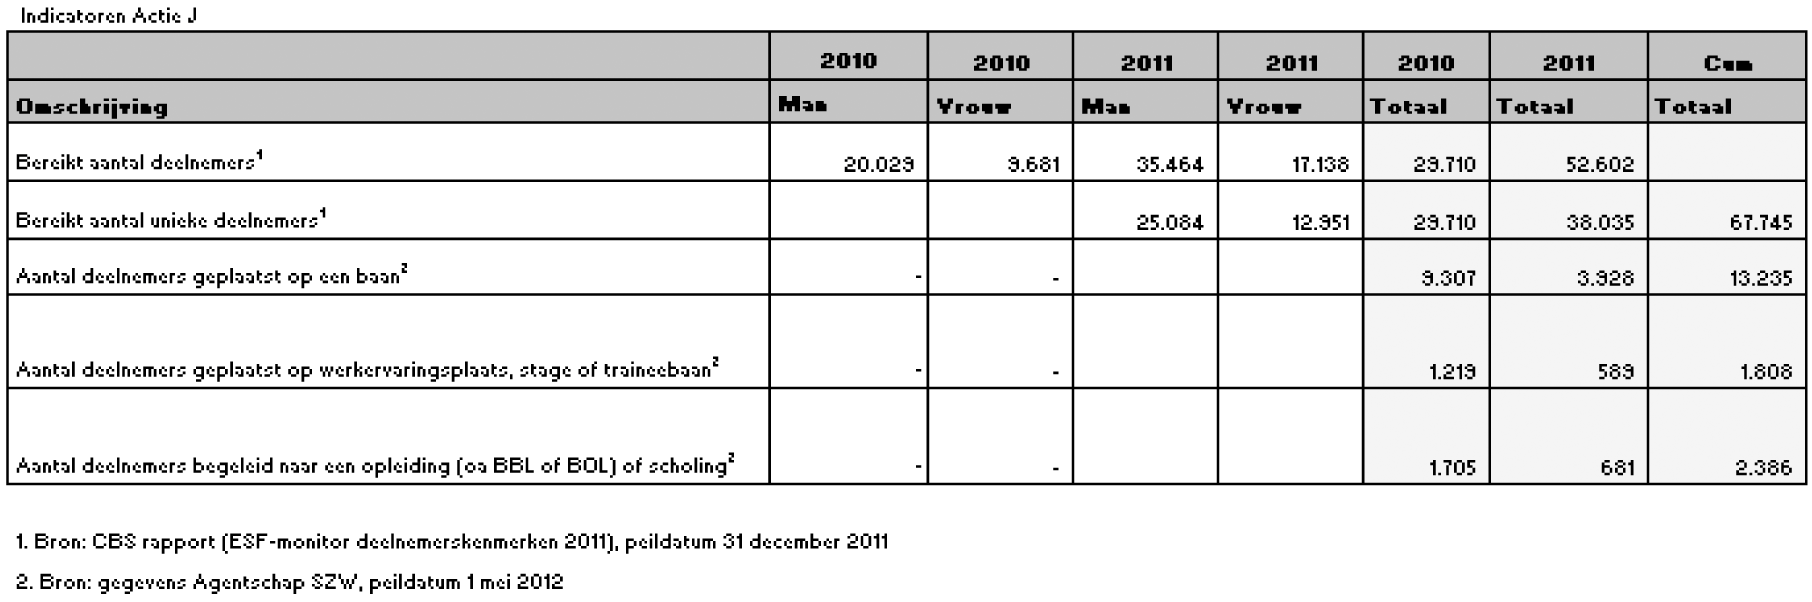 Tabel 3: Actie J 2007–2011